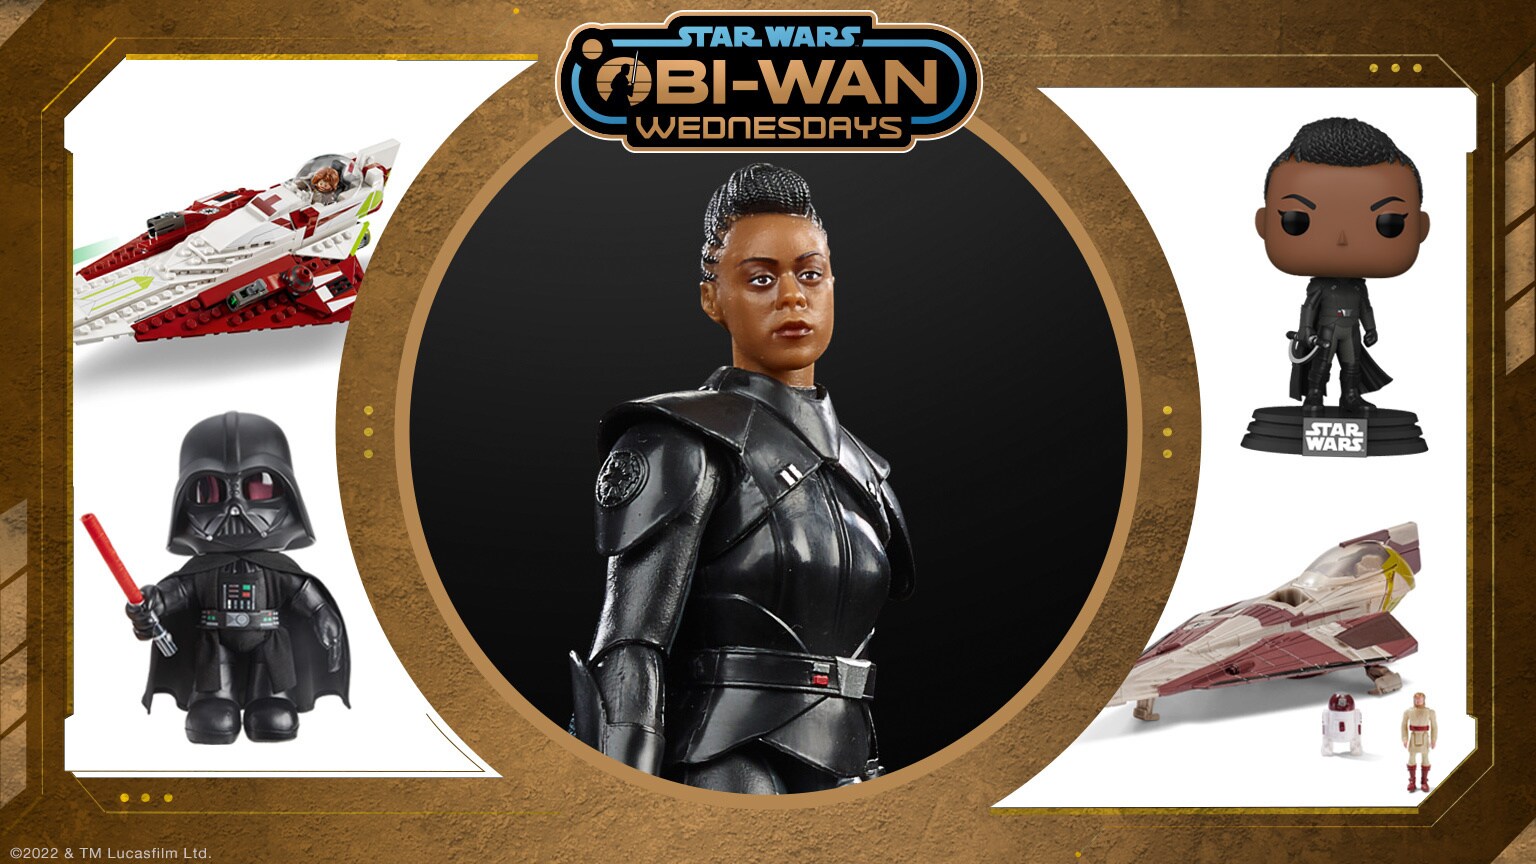 Obi-Wan Wednesdays: Reva Figure Revealed and More!